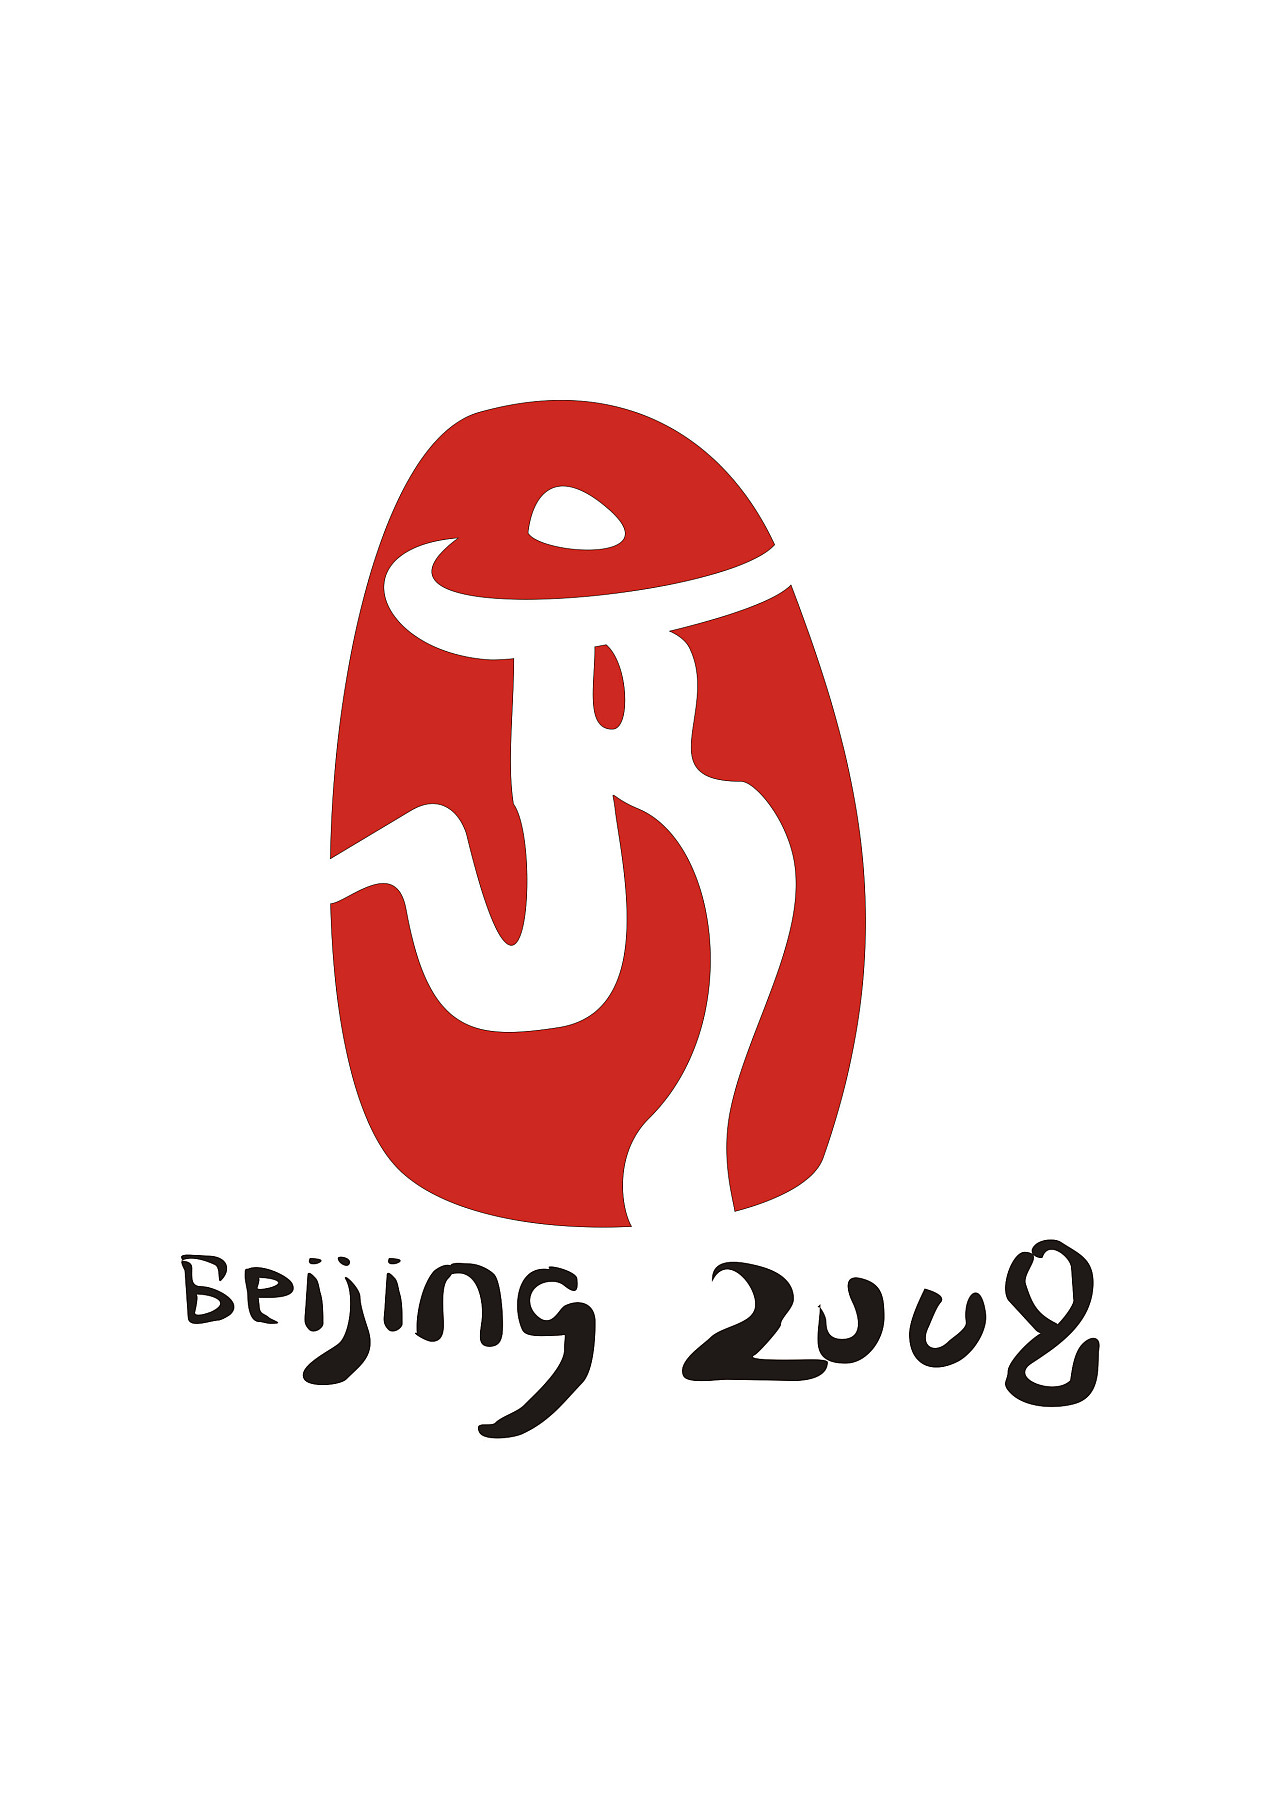 北京夏季奥运会会徽图片